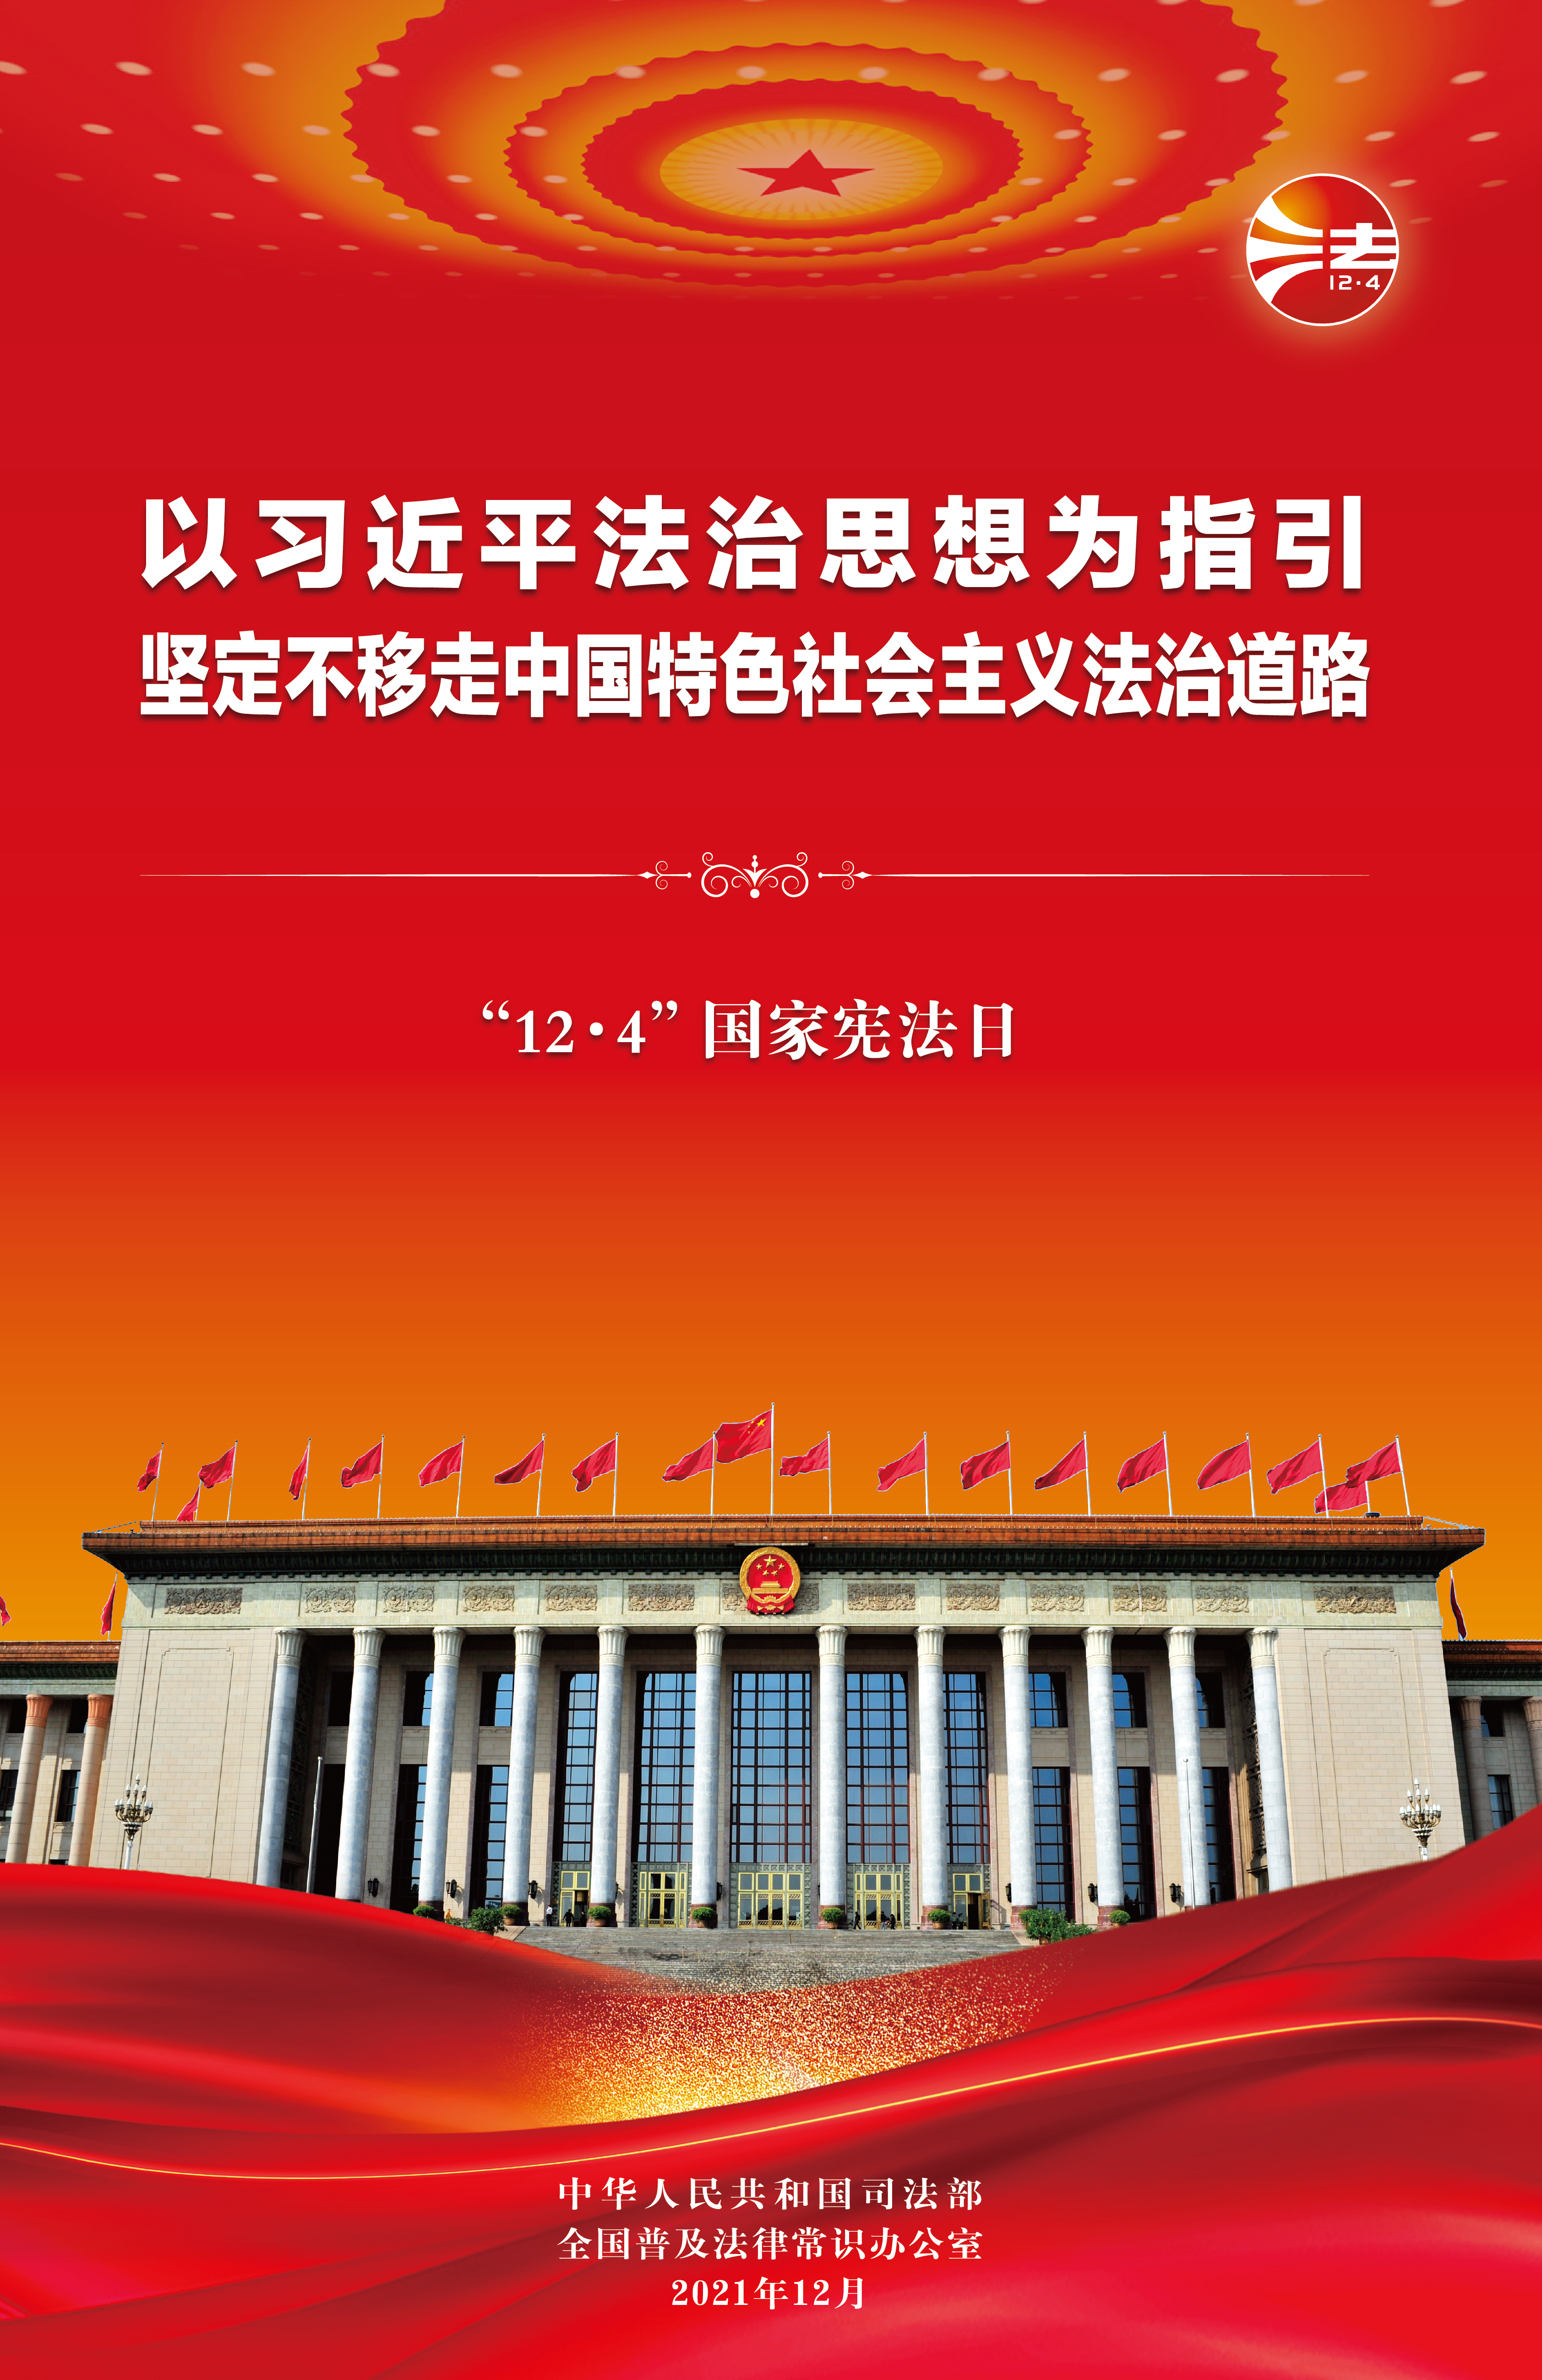 天游平台注册地址“12.4” 国家宪法日